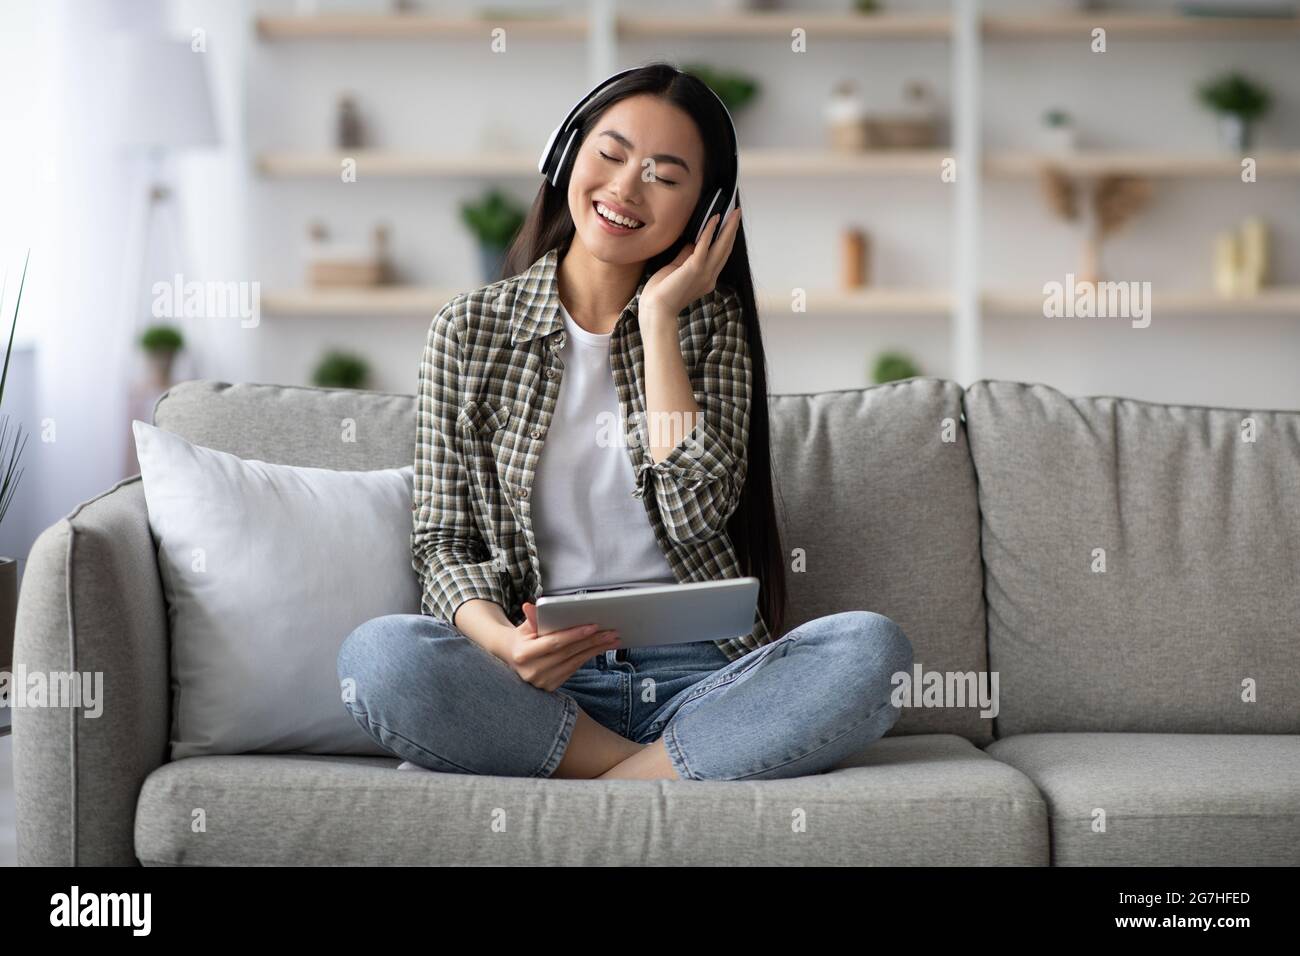 Joyeuse jeune femme asiatique écoutant de la musique en ligne, en utilisant un casque stéréo sans fil et une nouvelle application mobile sur tablette numérique, femme chinoise sitti Banque D'Images